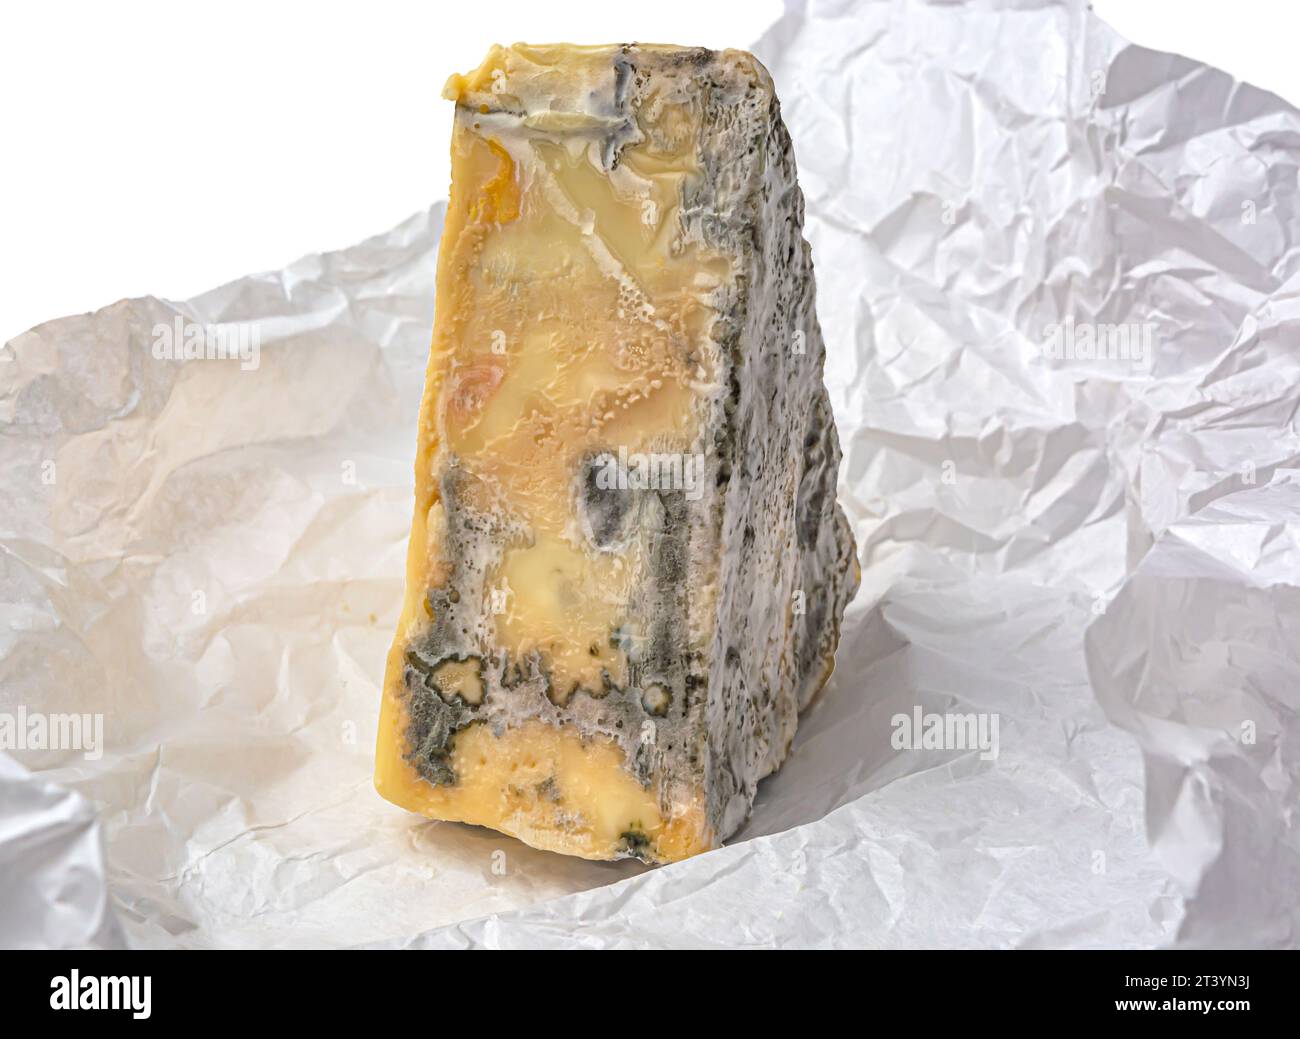 pezzo triangolare di formaggio con muffa su carta bianca a forma di primo piano Foto Stock